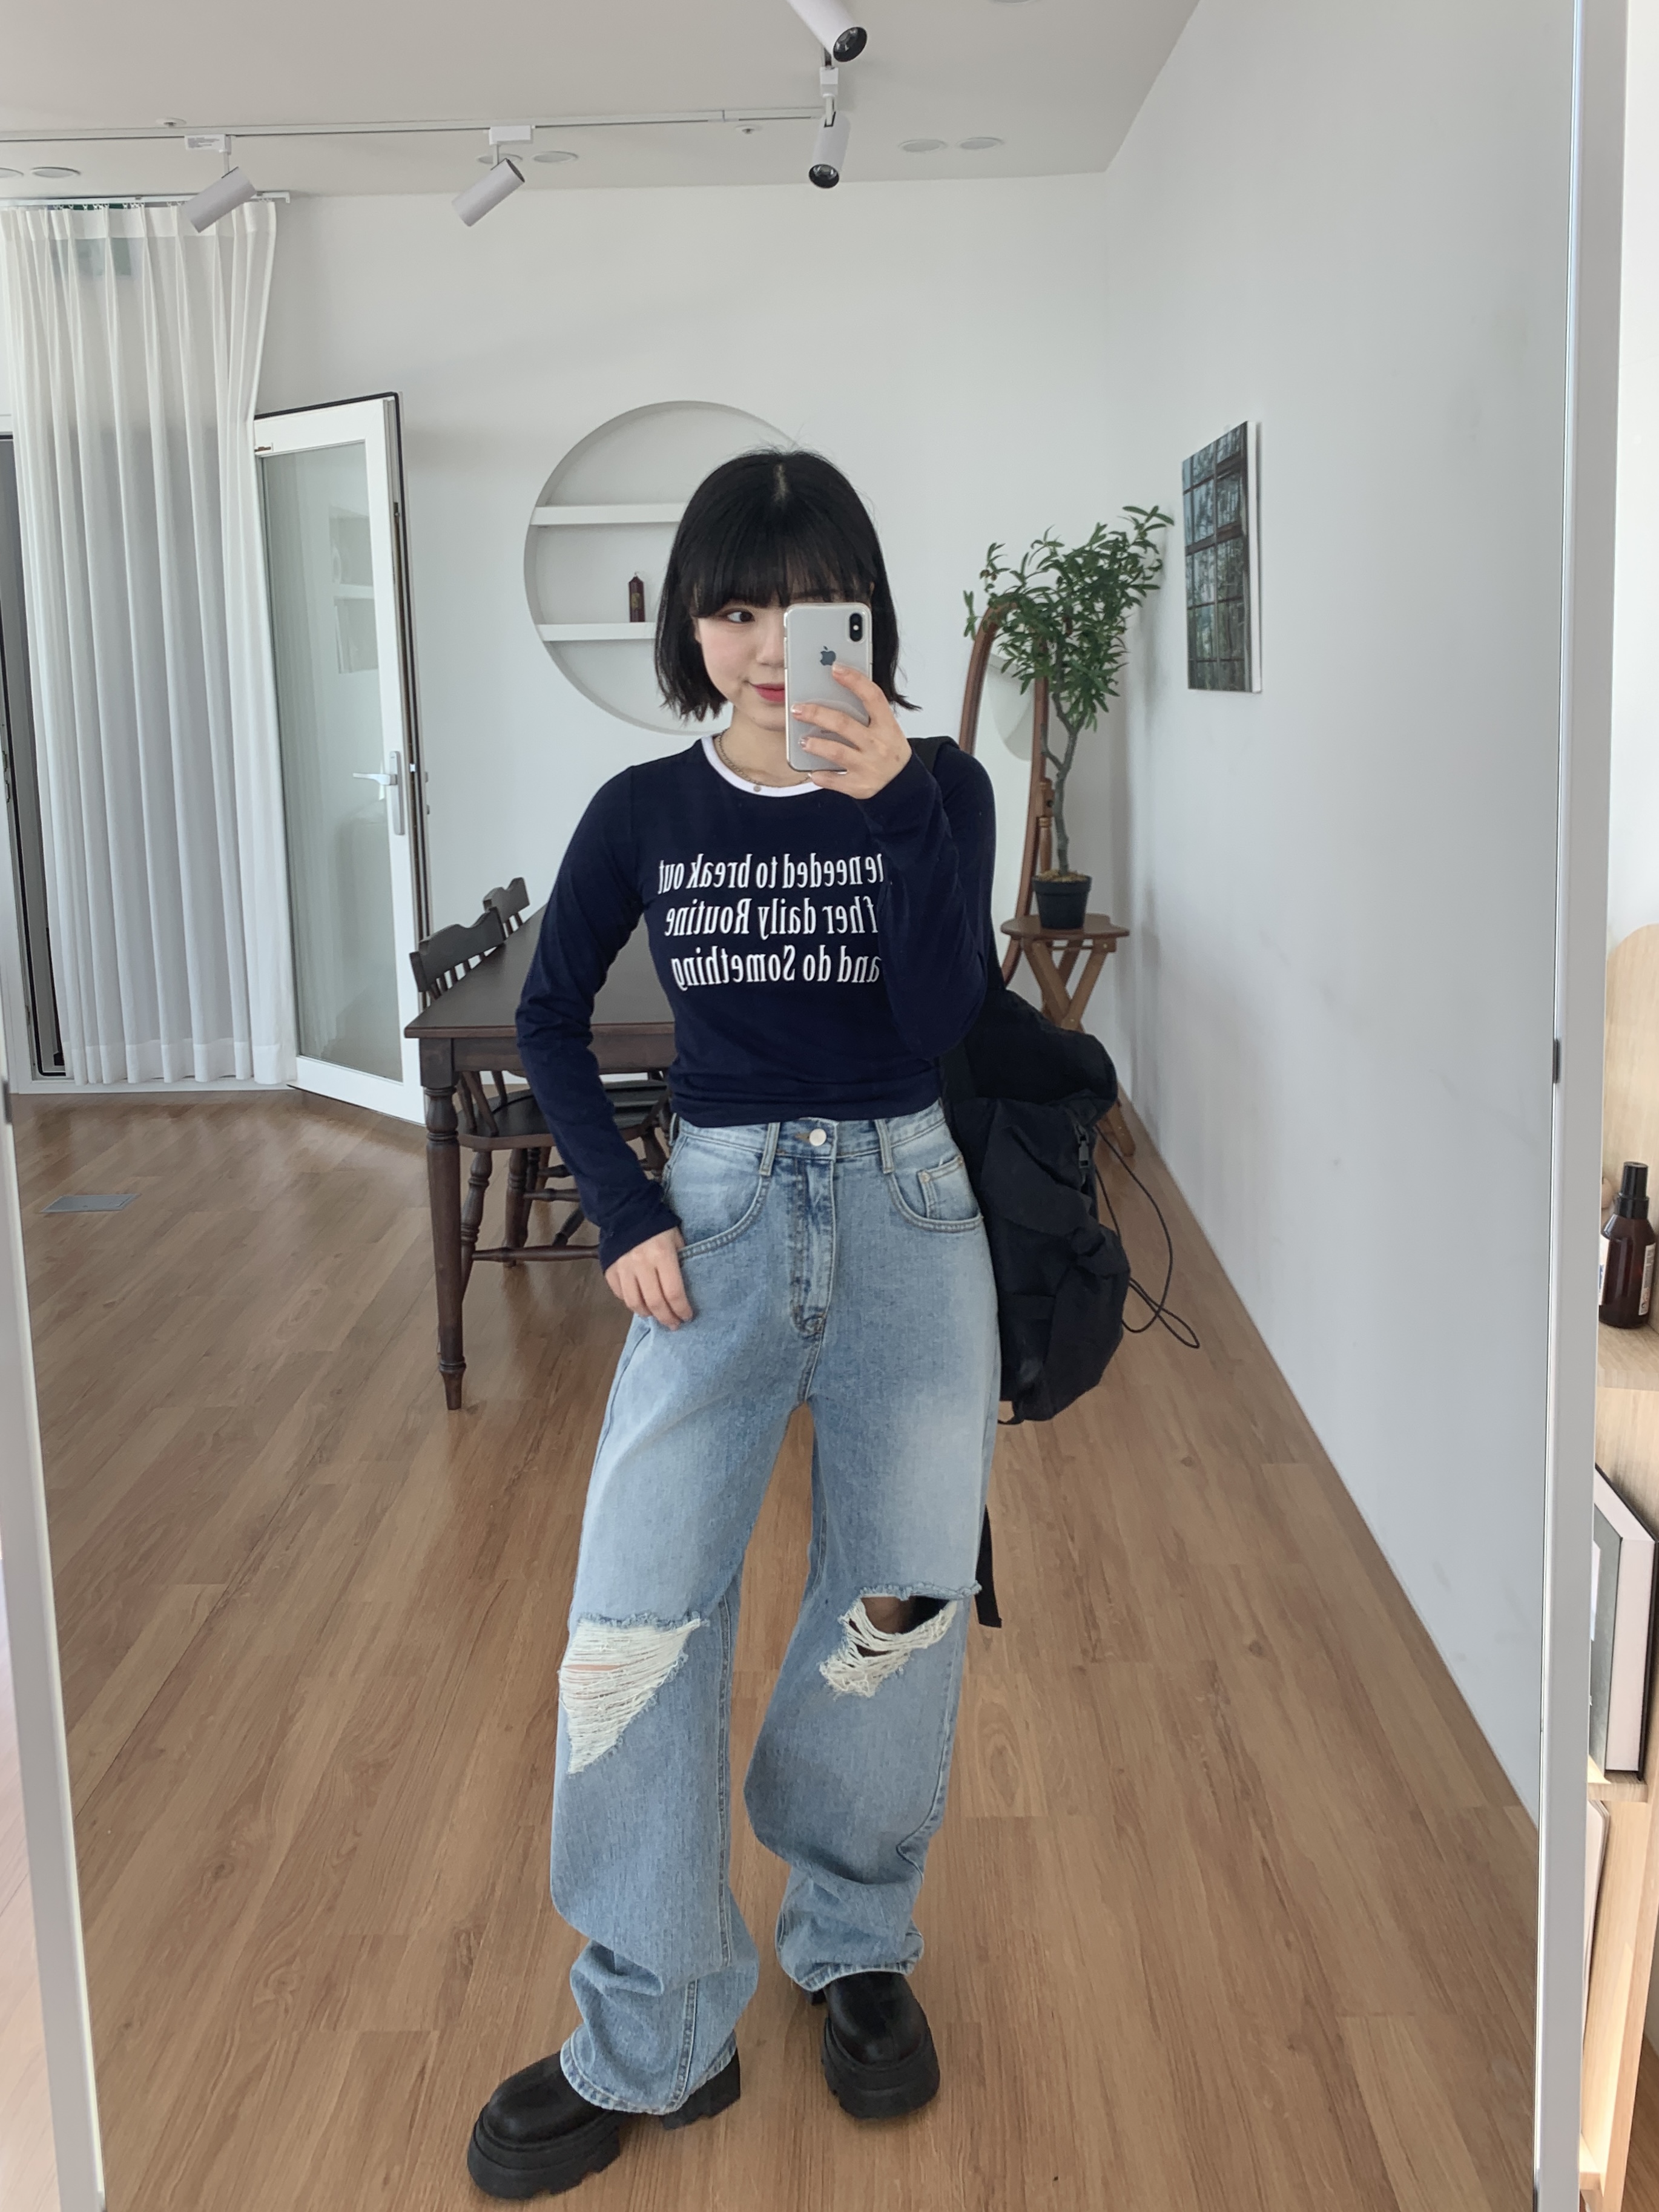 [세트] 브롱 배색 티셔츠 네이비 + 아벨 찢청 와이드 팬츠